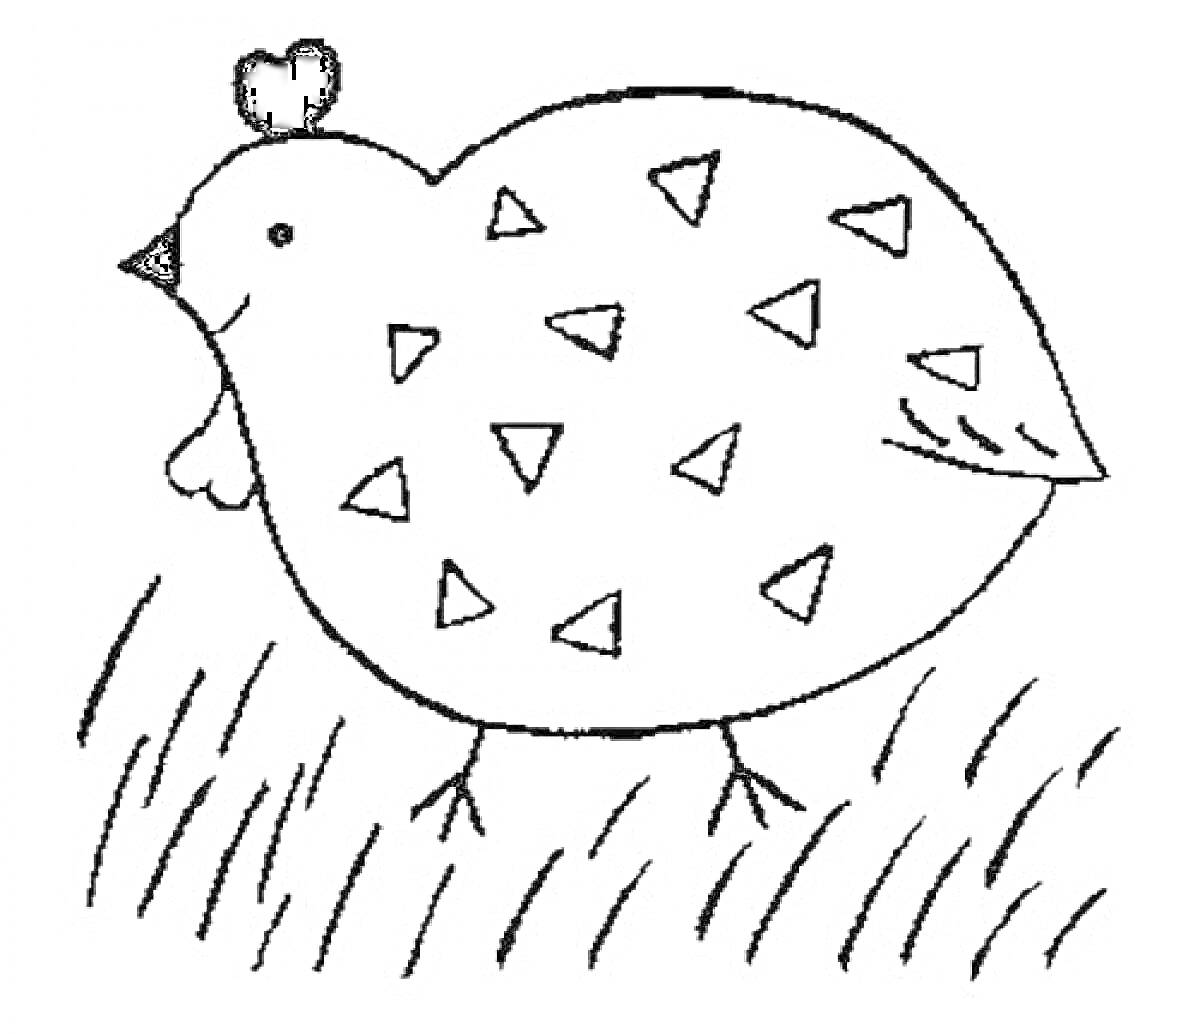 Курочка Ряба на траве с треугольным узором на спине